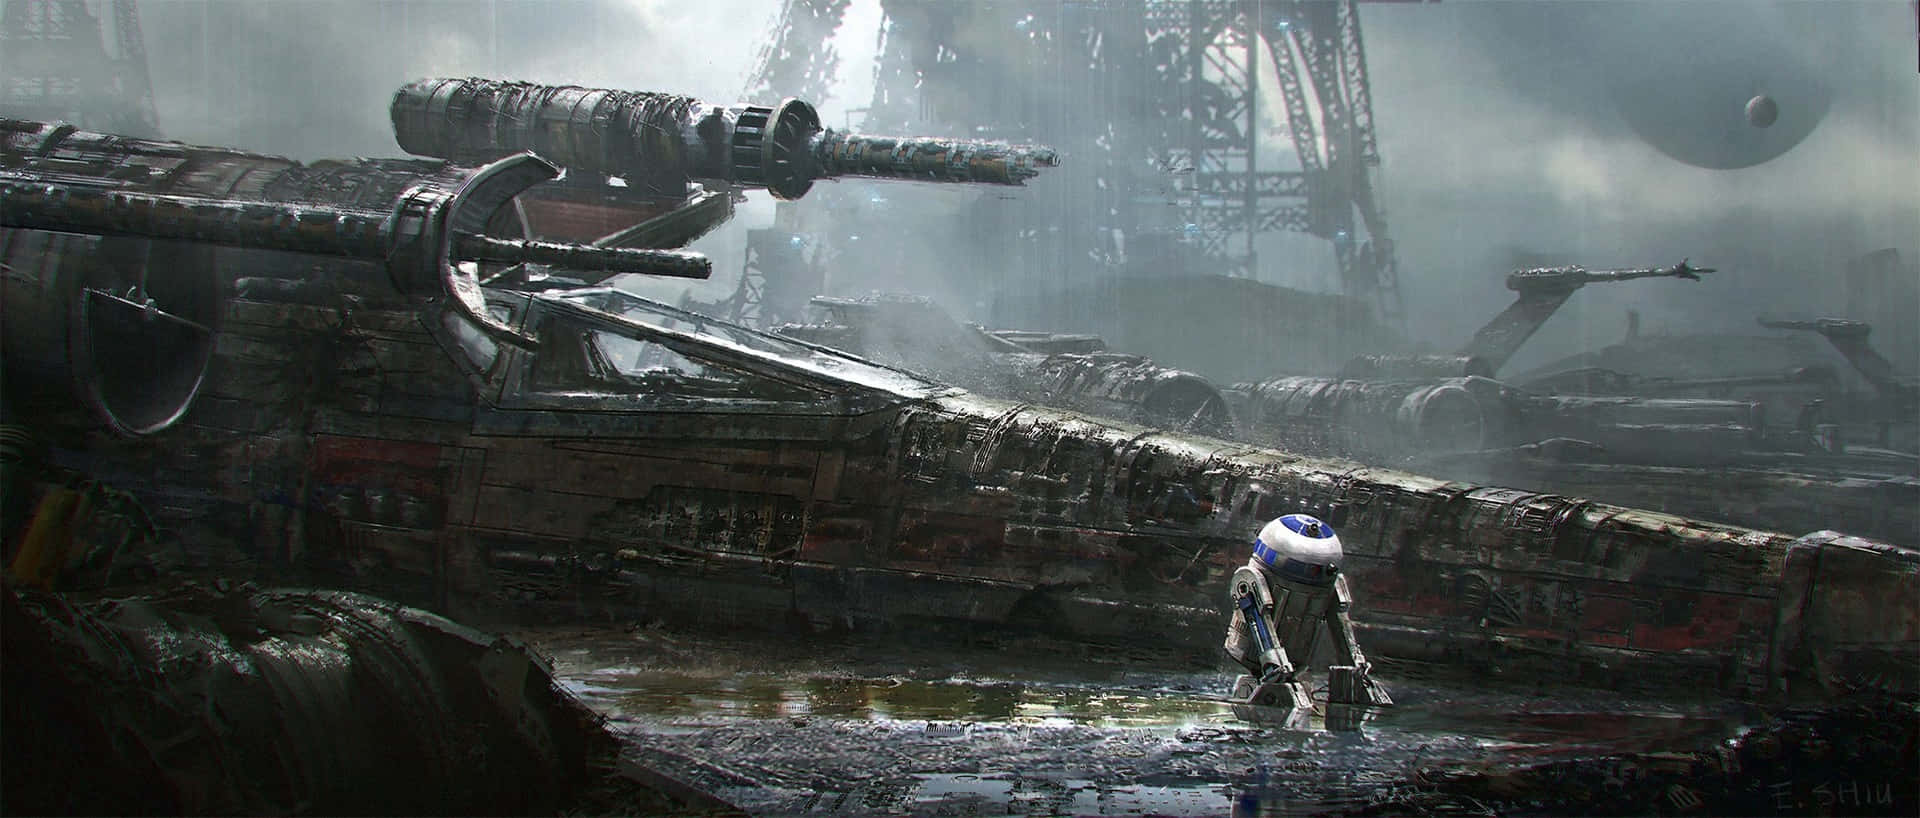 Et tæt kig på R2-D2 fra Star Wars-filmene. Wallpaper